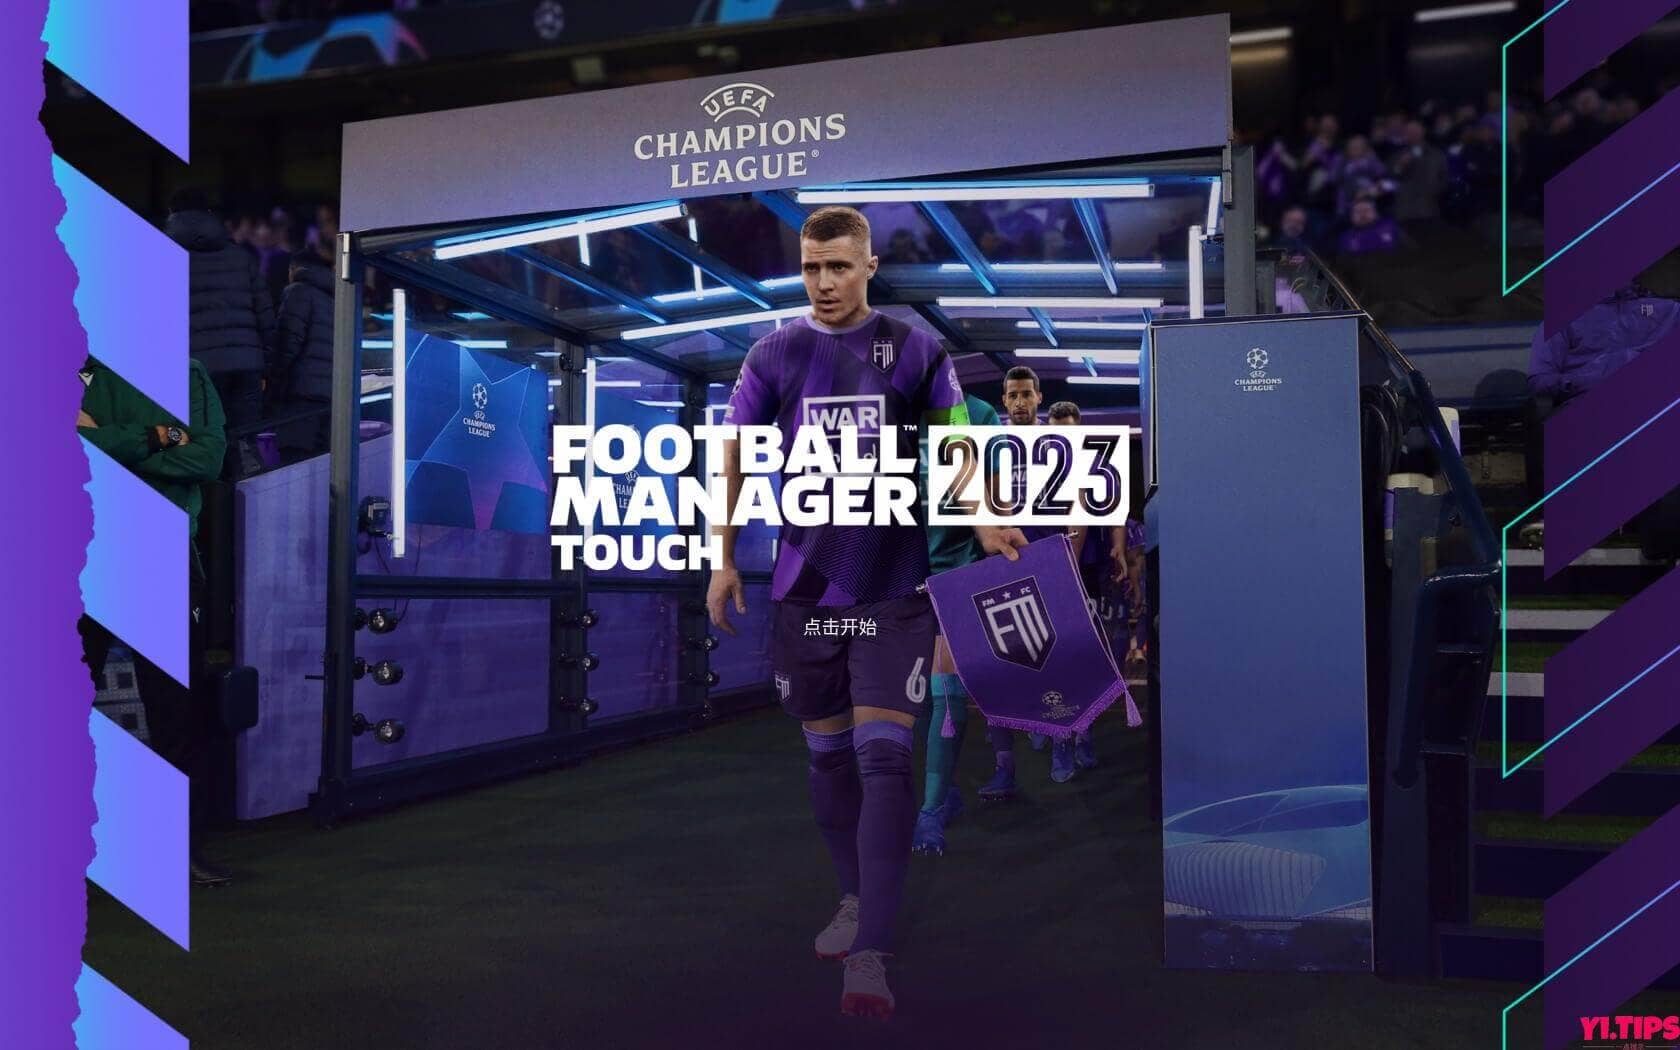 足球经理2023 破解版下载 Football Manager 2023 For Mac V23.3 - Yi.Tips-Yi.Tips